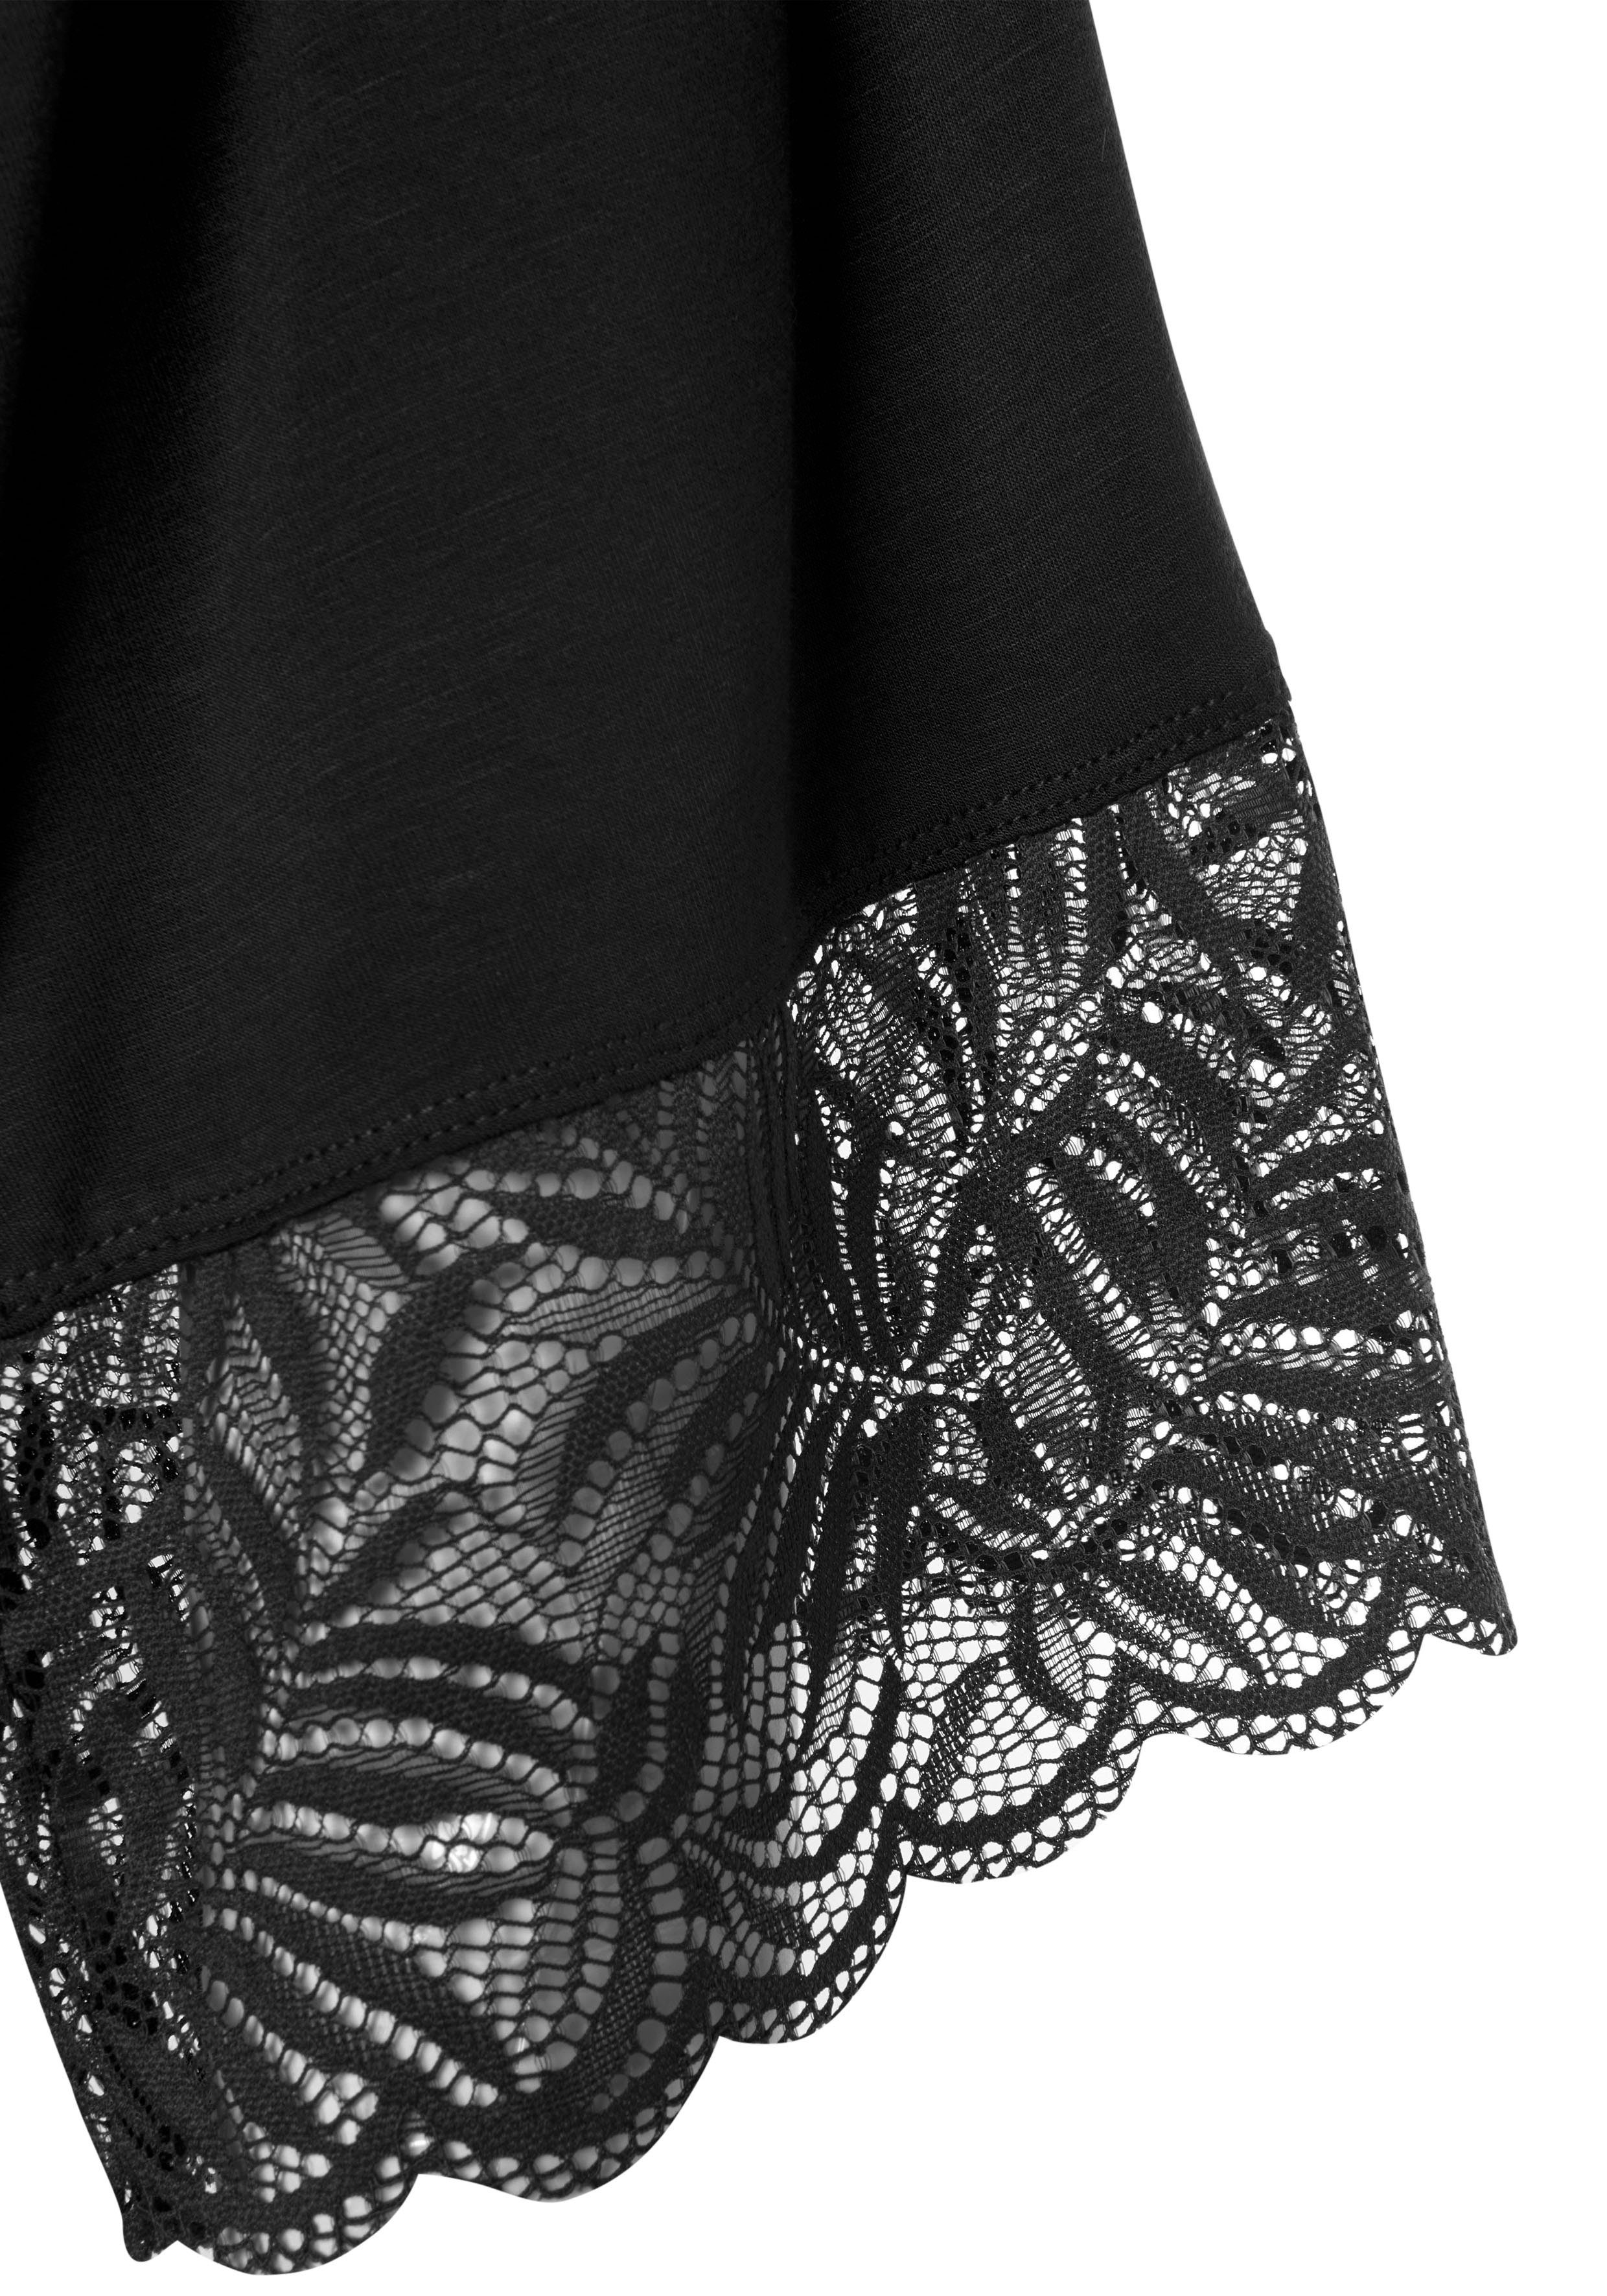 Kurzform, Viskose, mit LASCANA Kimono, schönen Kimono-Kragen, schwarz Gürtel, Spitzendetails